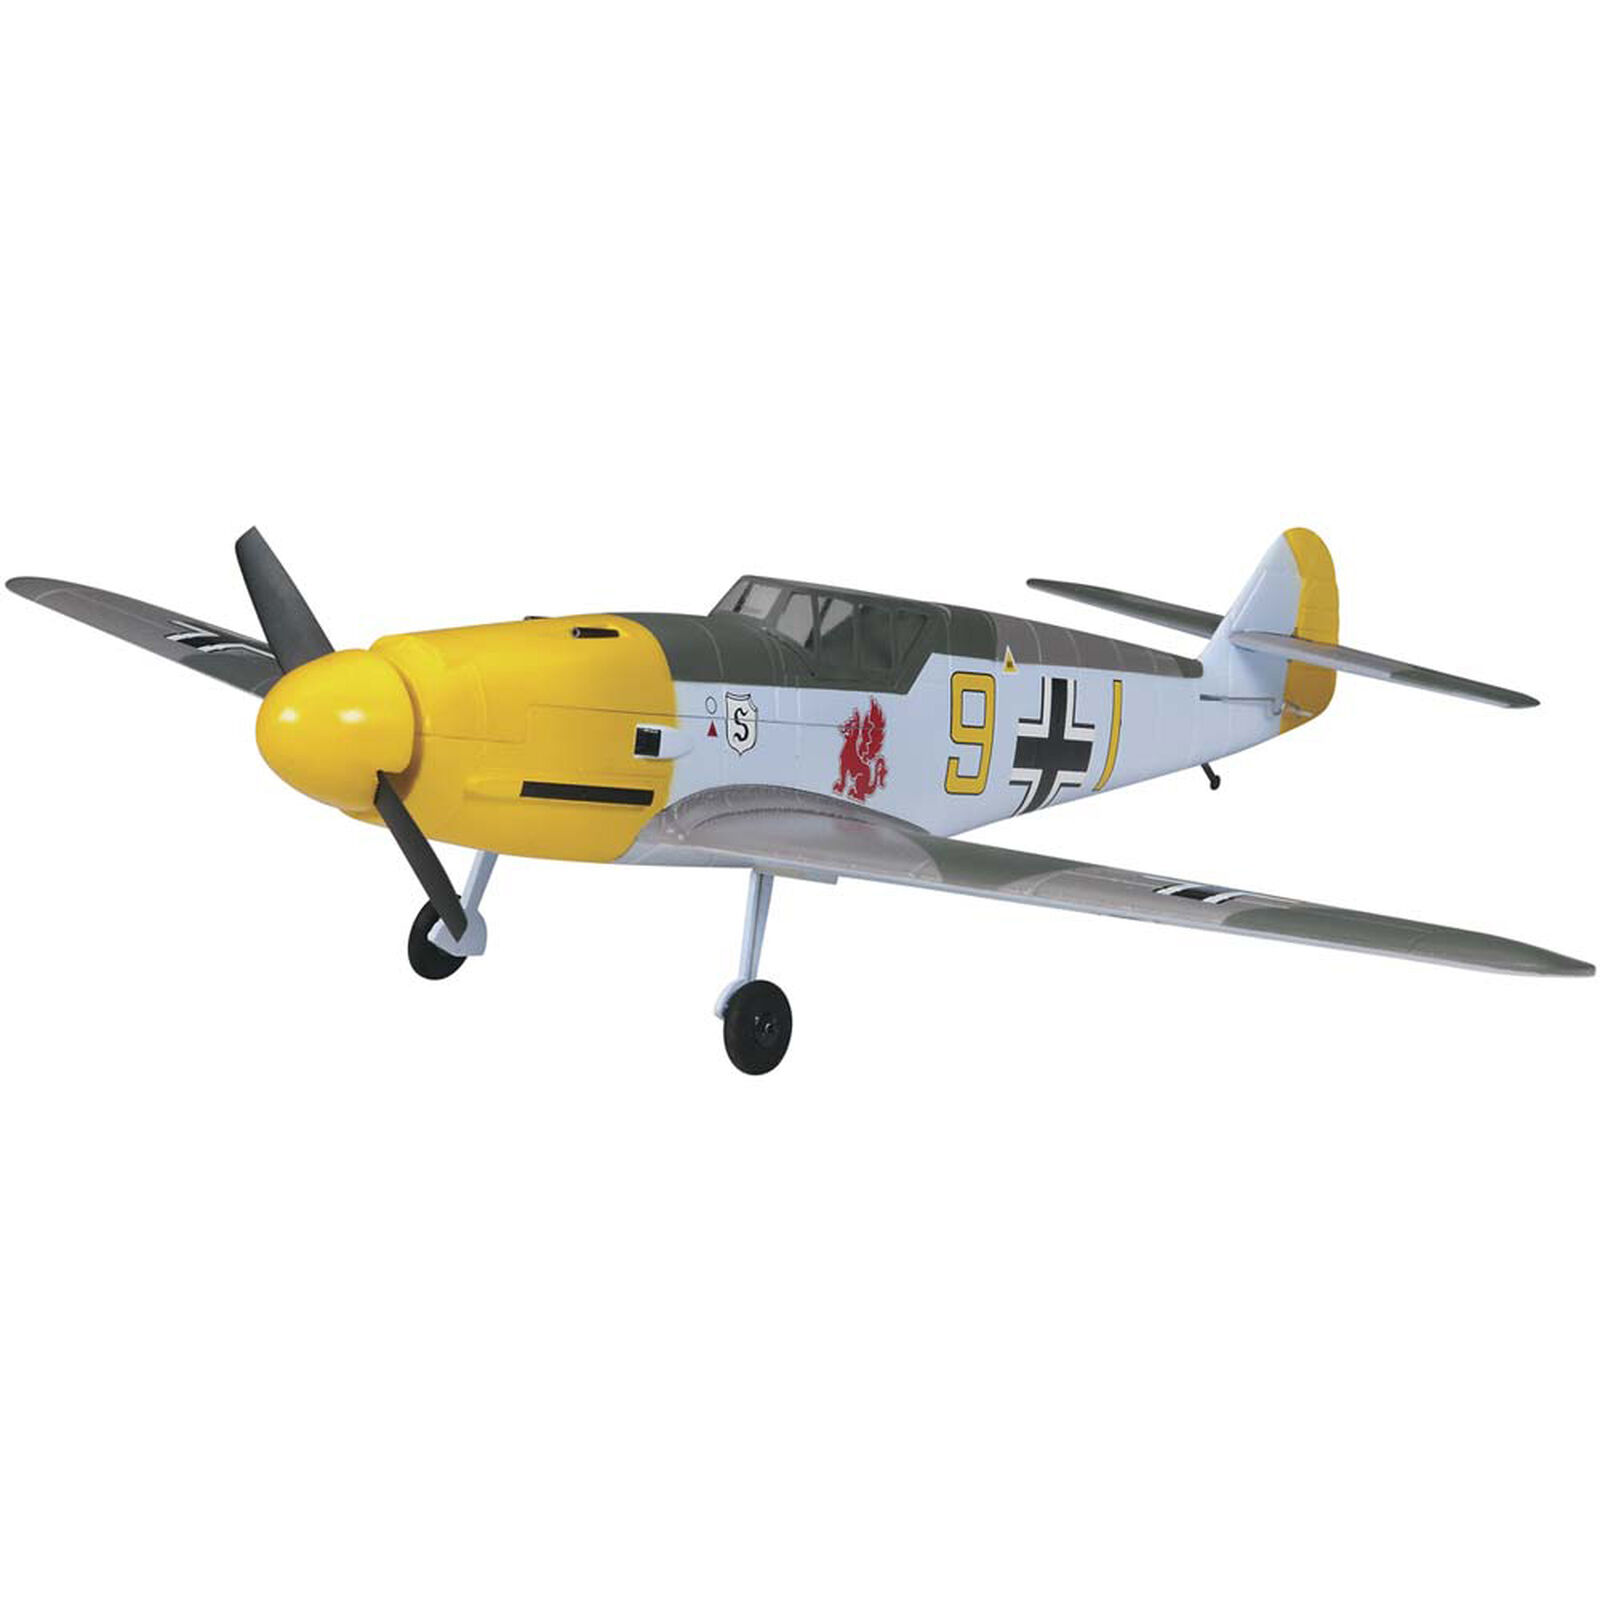 Aircore Messerschmitt Me 109 Airframe 22"